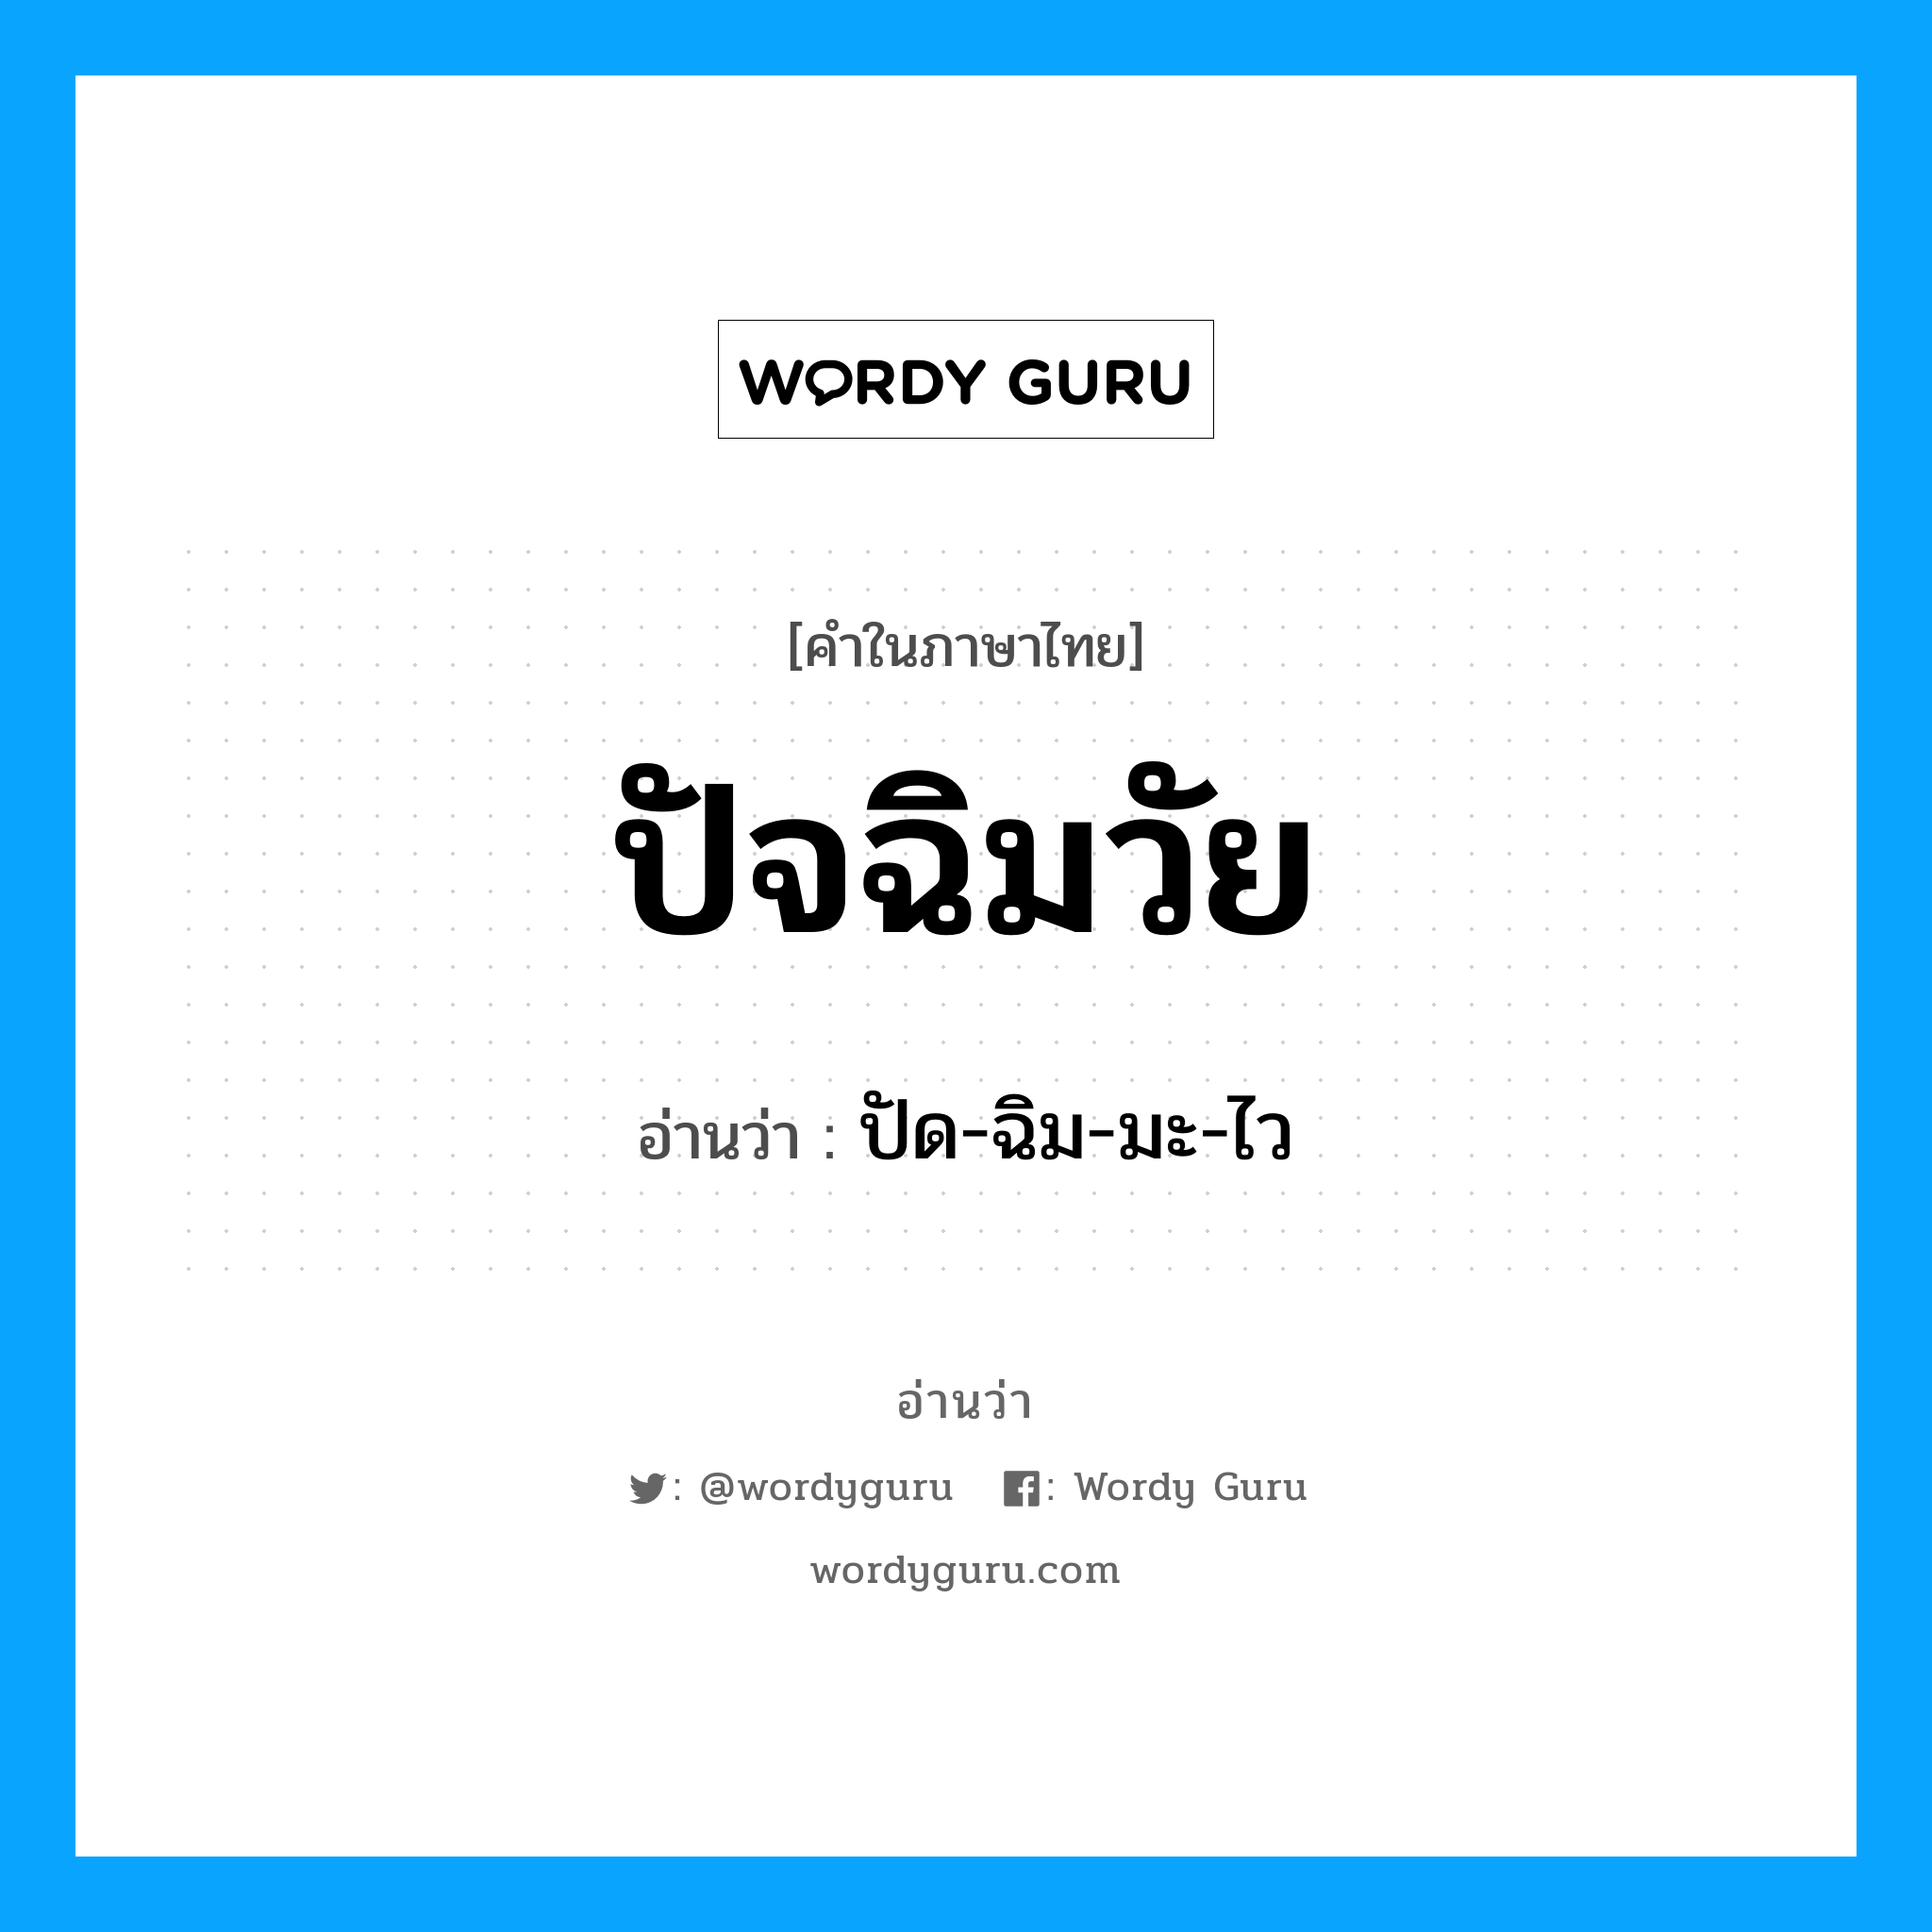 ปัด-ฉิม-มะ-ไว เป็นคำอ่านของคำไหน?, คำในภาษาไทย ปัด-ฉิม-มะ-ไว อ่านว่า ปัจฉิมวัย